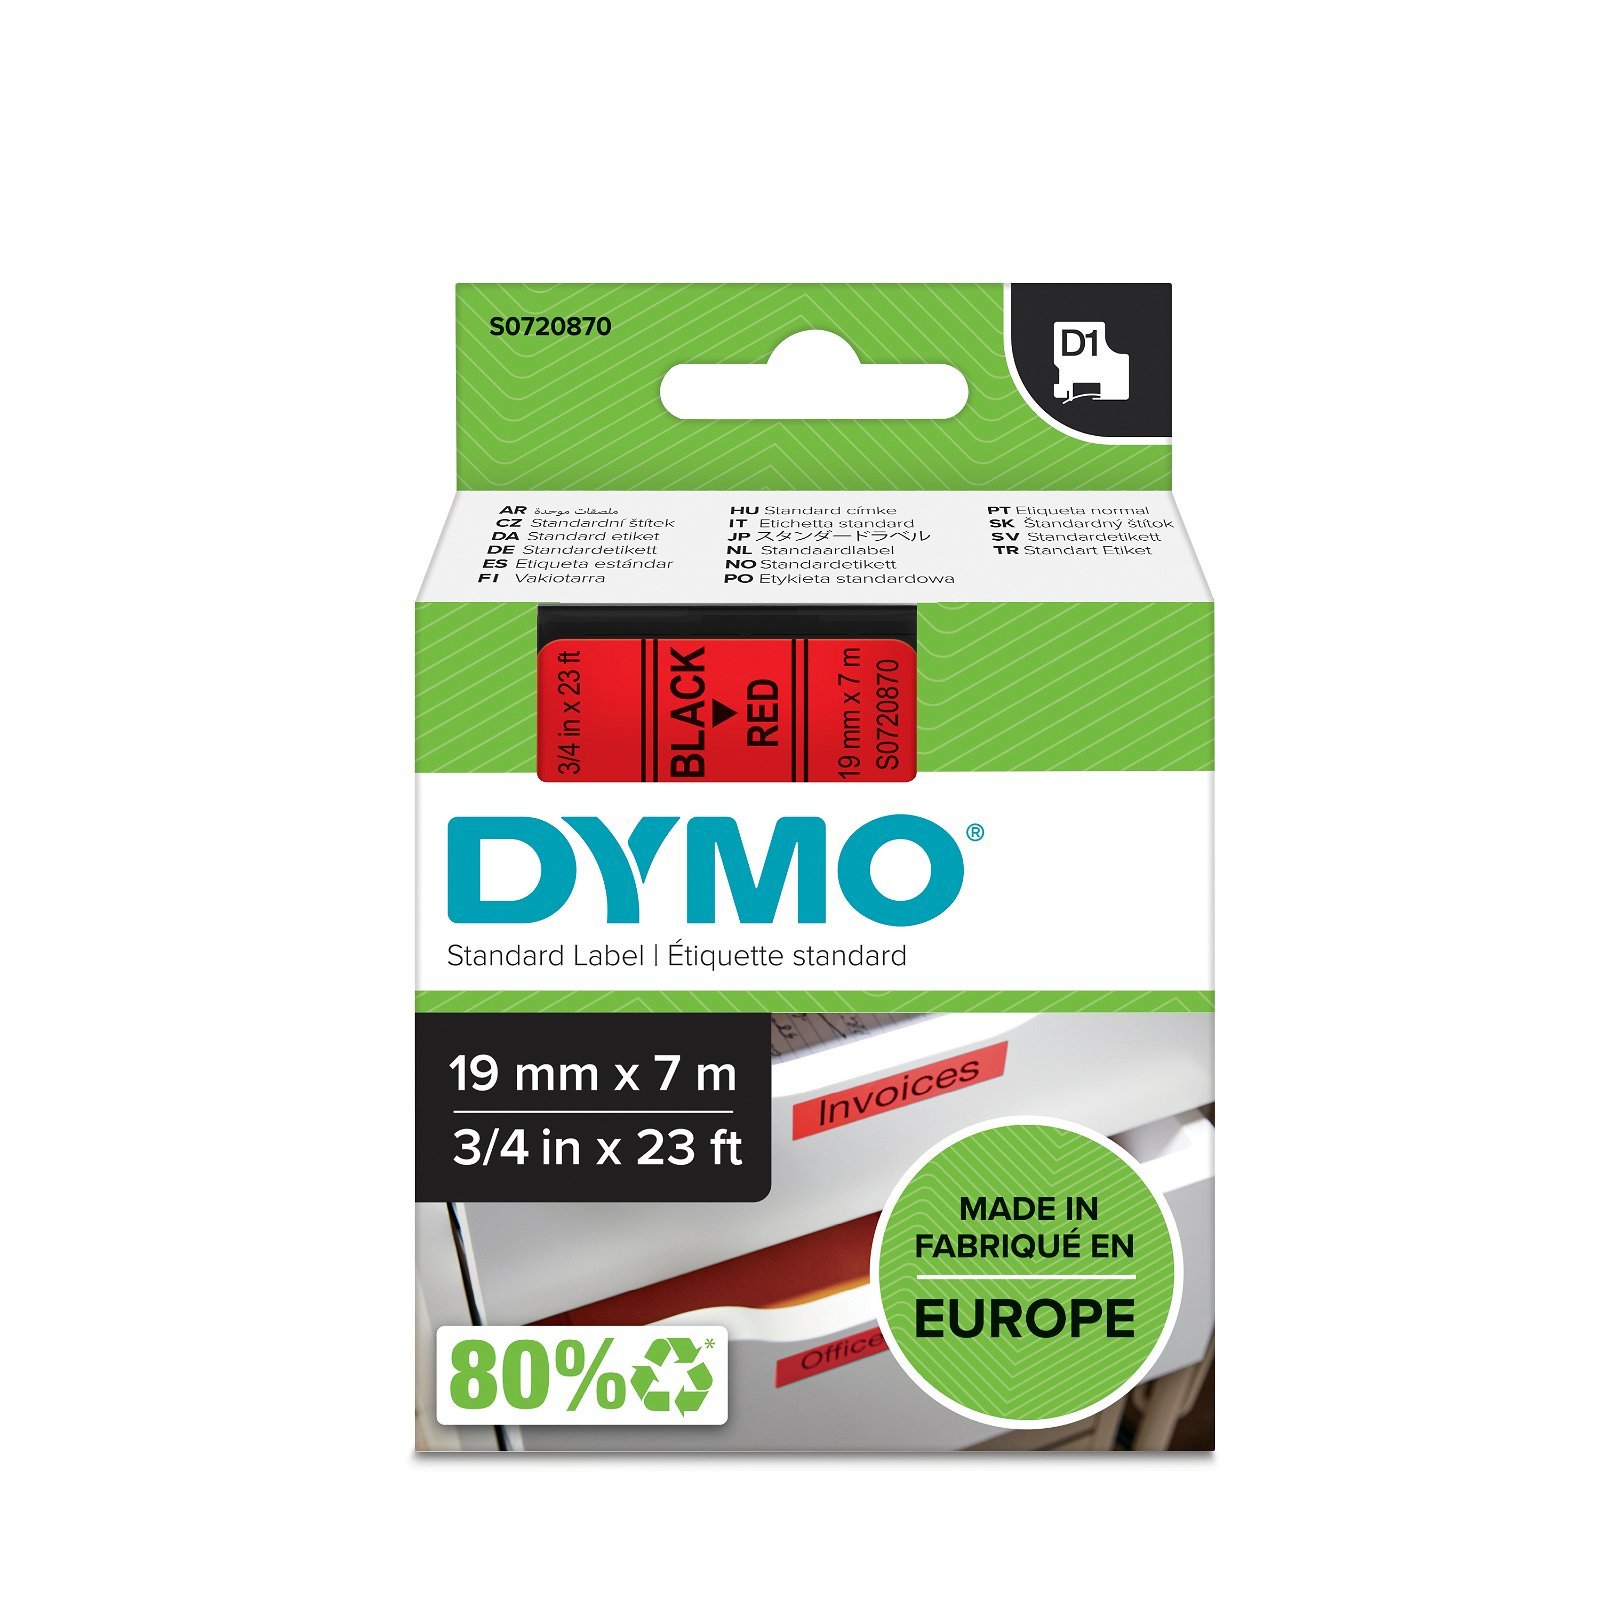 Dymo D1 standard tapekasette 19 mm sort;rod Polyester